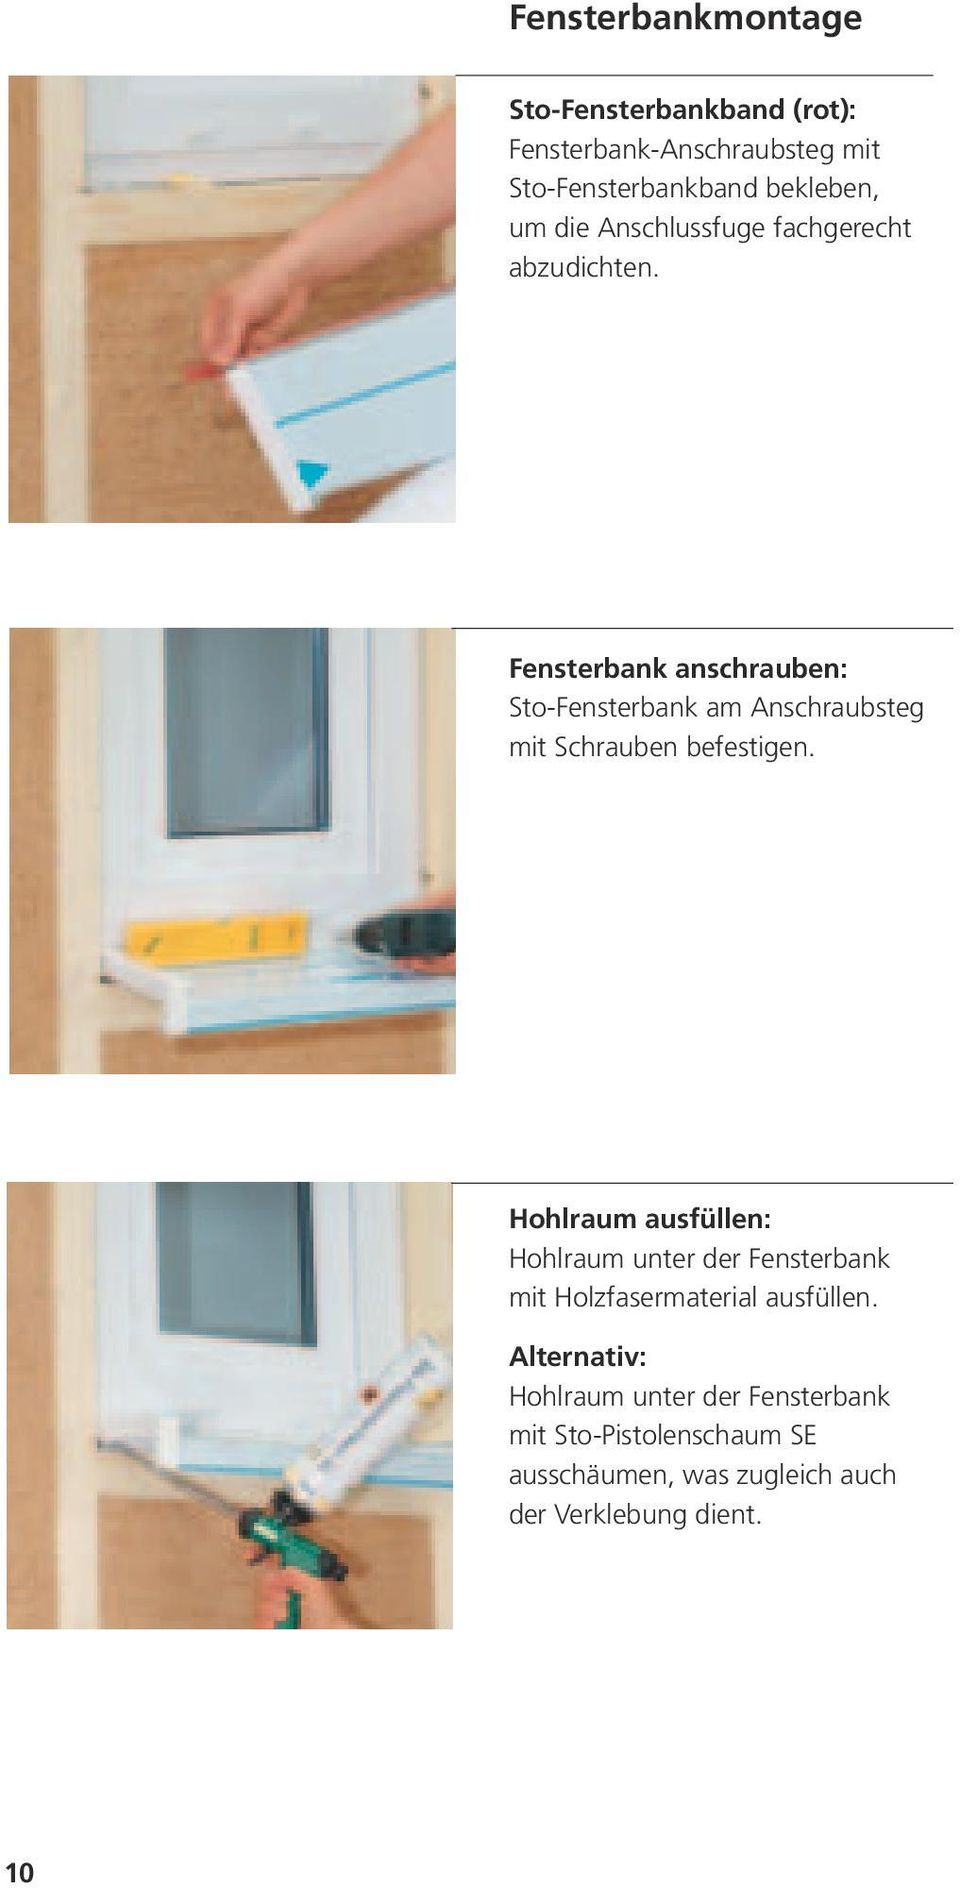 Fensterbank anschrauben: Sto-Fensterbank am Anschraubsteg mit Schrauben befestigen.